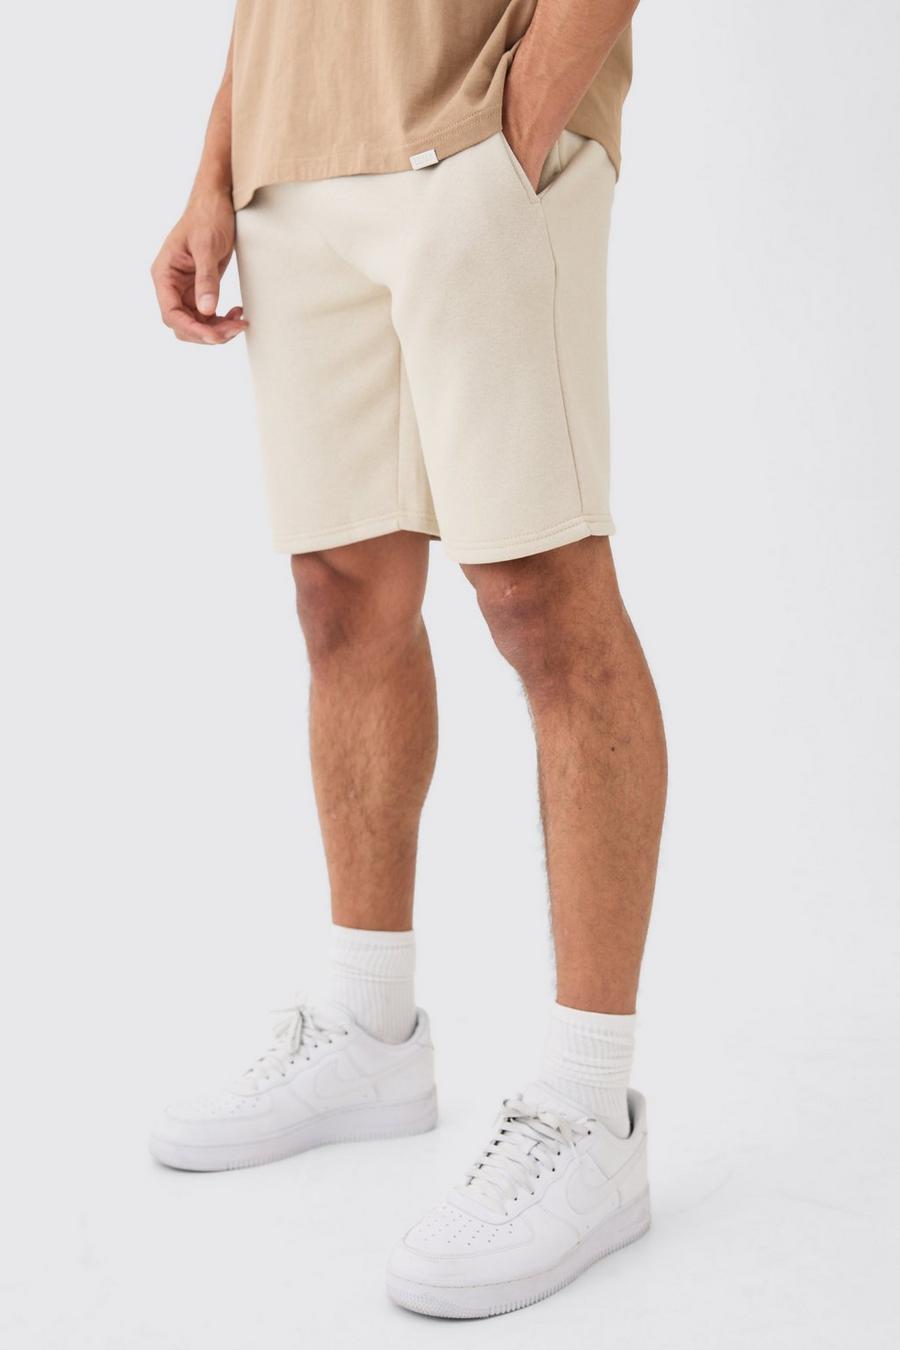 Lockere mittellange Basic Shorts, Stone